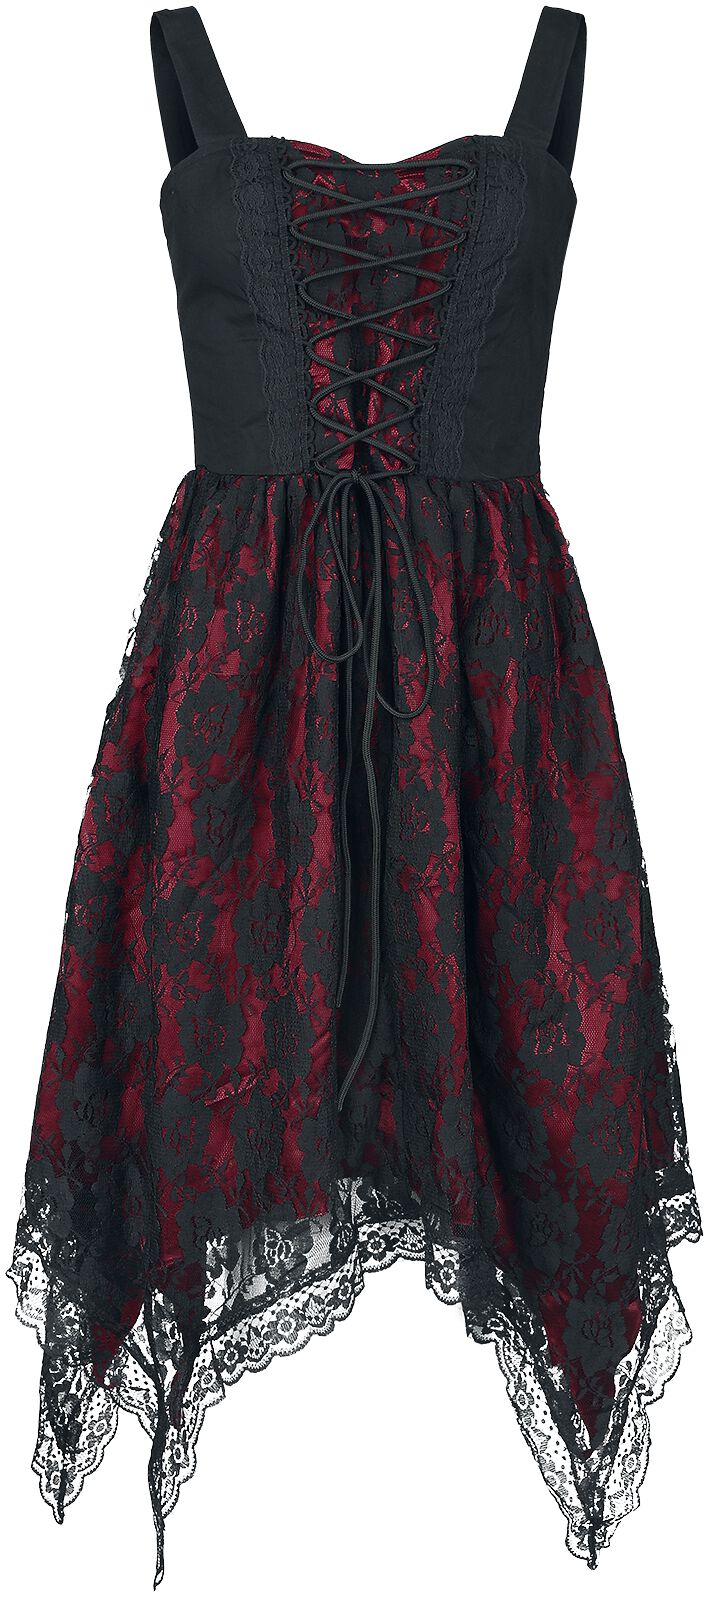 Gothicana by EMP Kleid mit Spitze und Zipfelsaum Kurzes Kleid schwarz rot in L